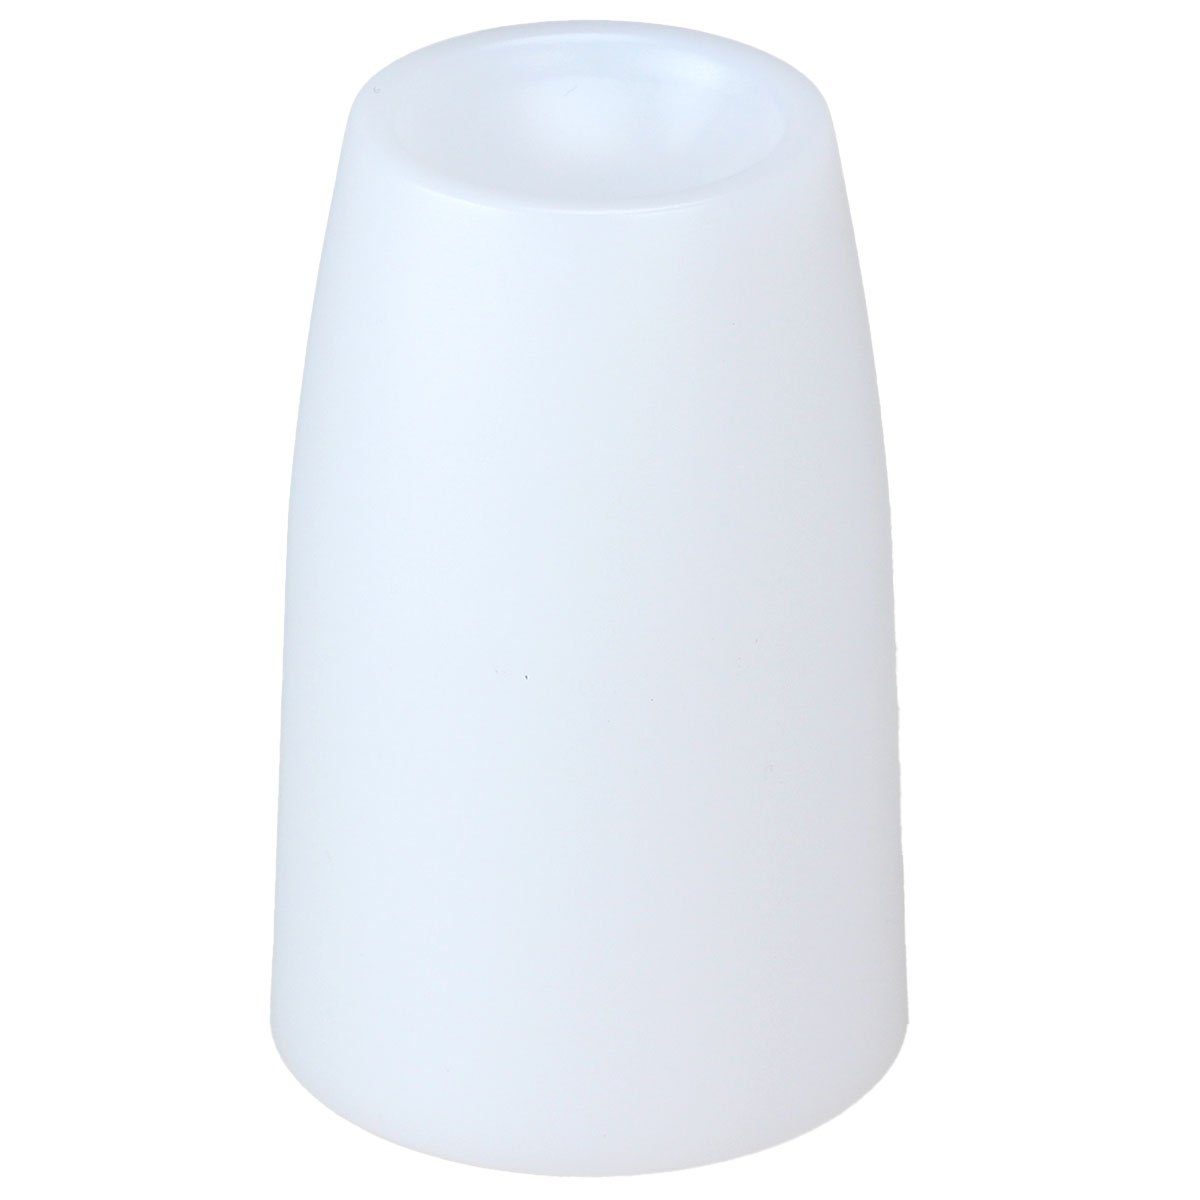 Fenix LED Taschenlampe Diffusor weiß AOD-S V2.0